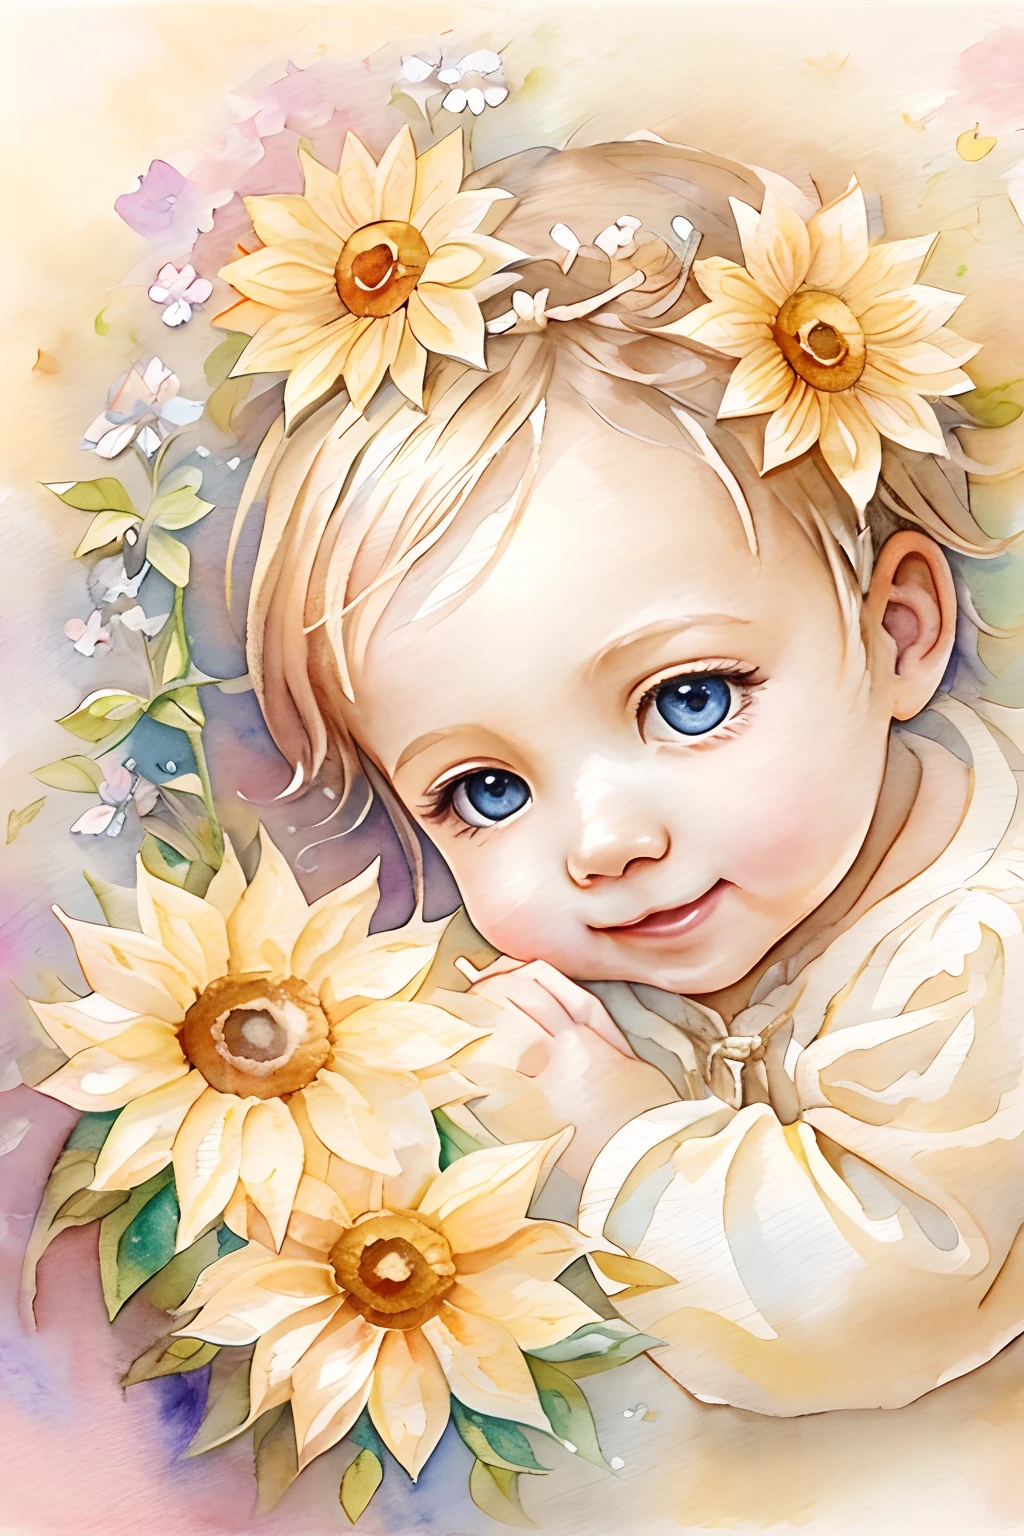 Bendiciones de los ángeles､fondo brillante、marca del corazon、sensibilidad､Una sonrisa、amable､Ángel bebé、pintura de acuarela、flor del sol